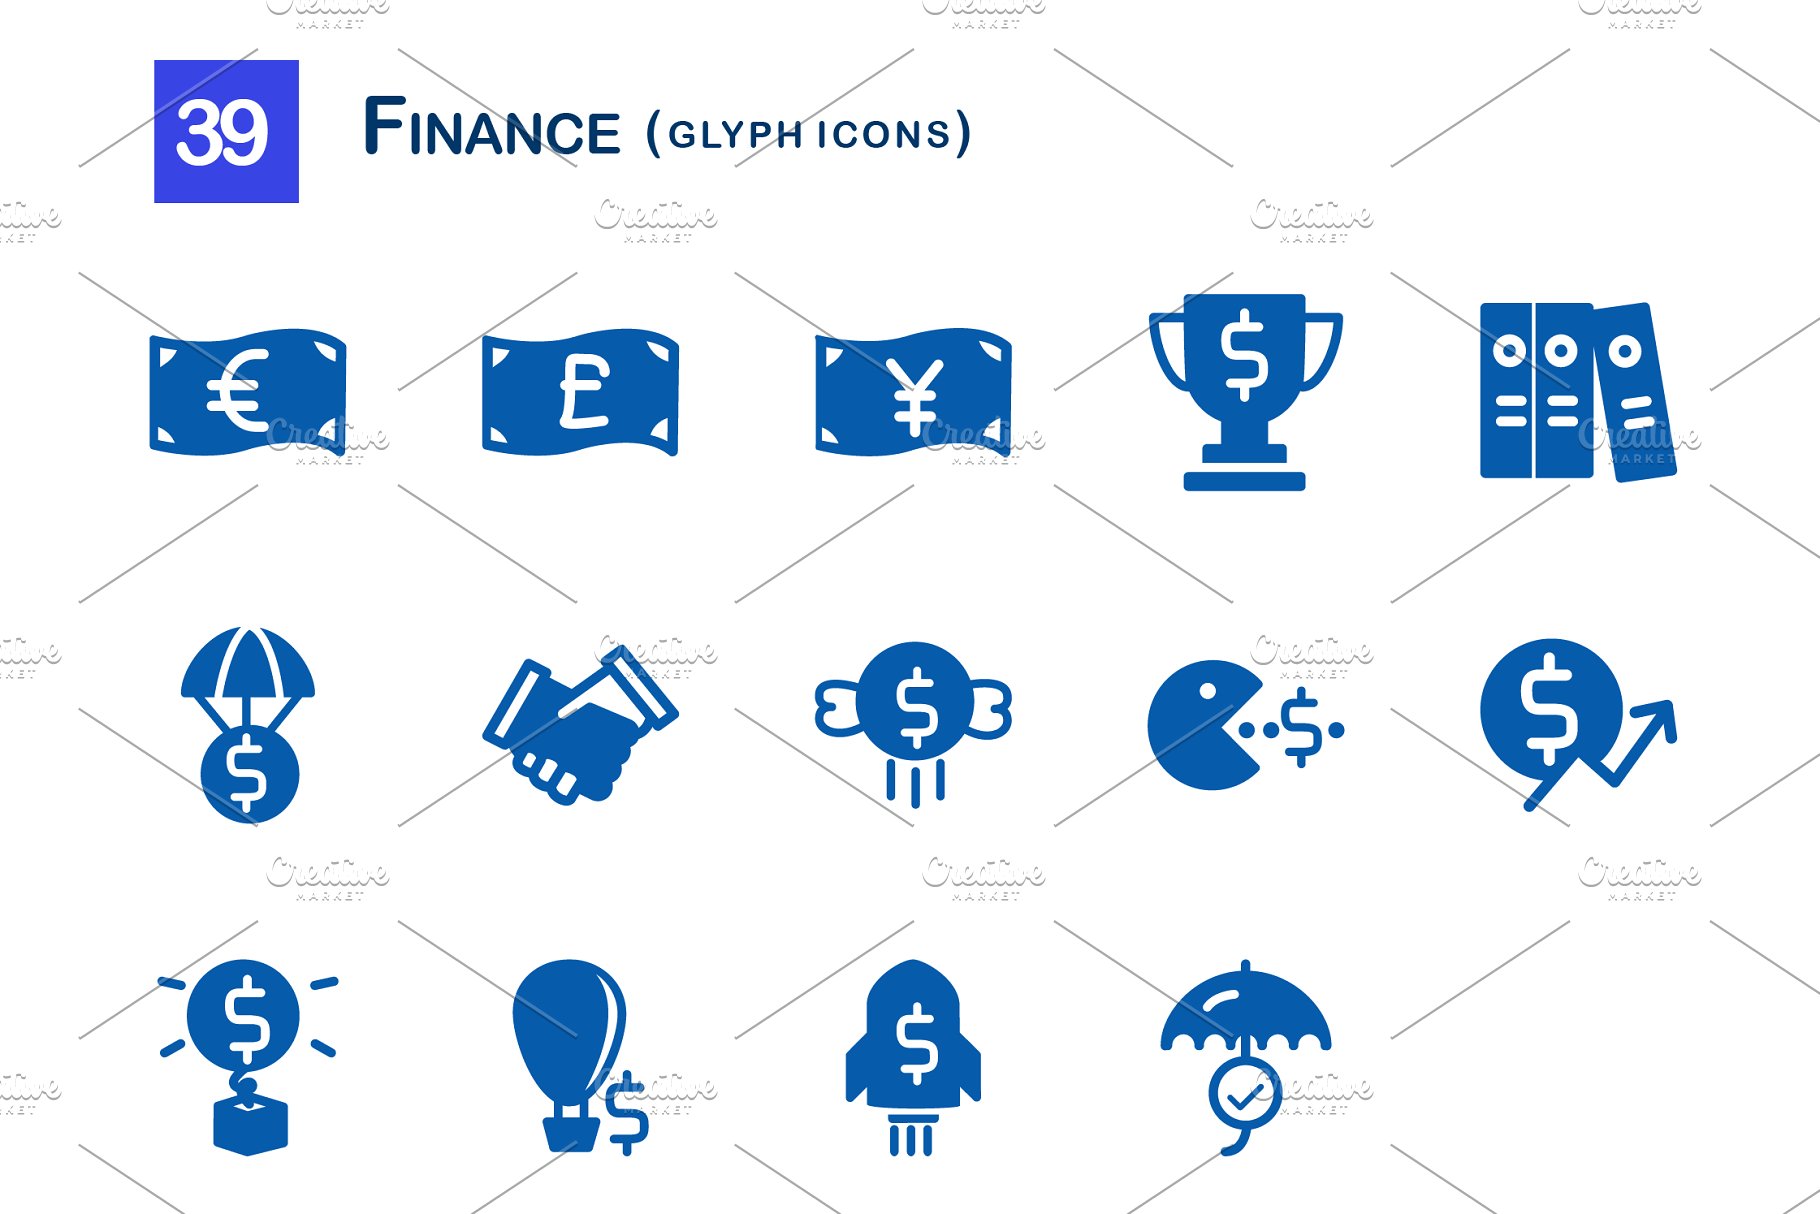 39个金融象形图标 39 Finance Glyph Icons插图(2)